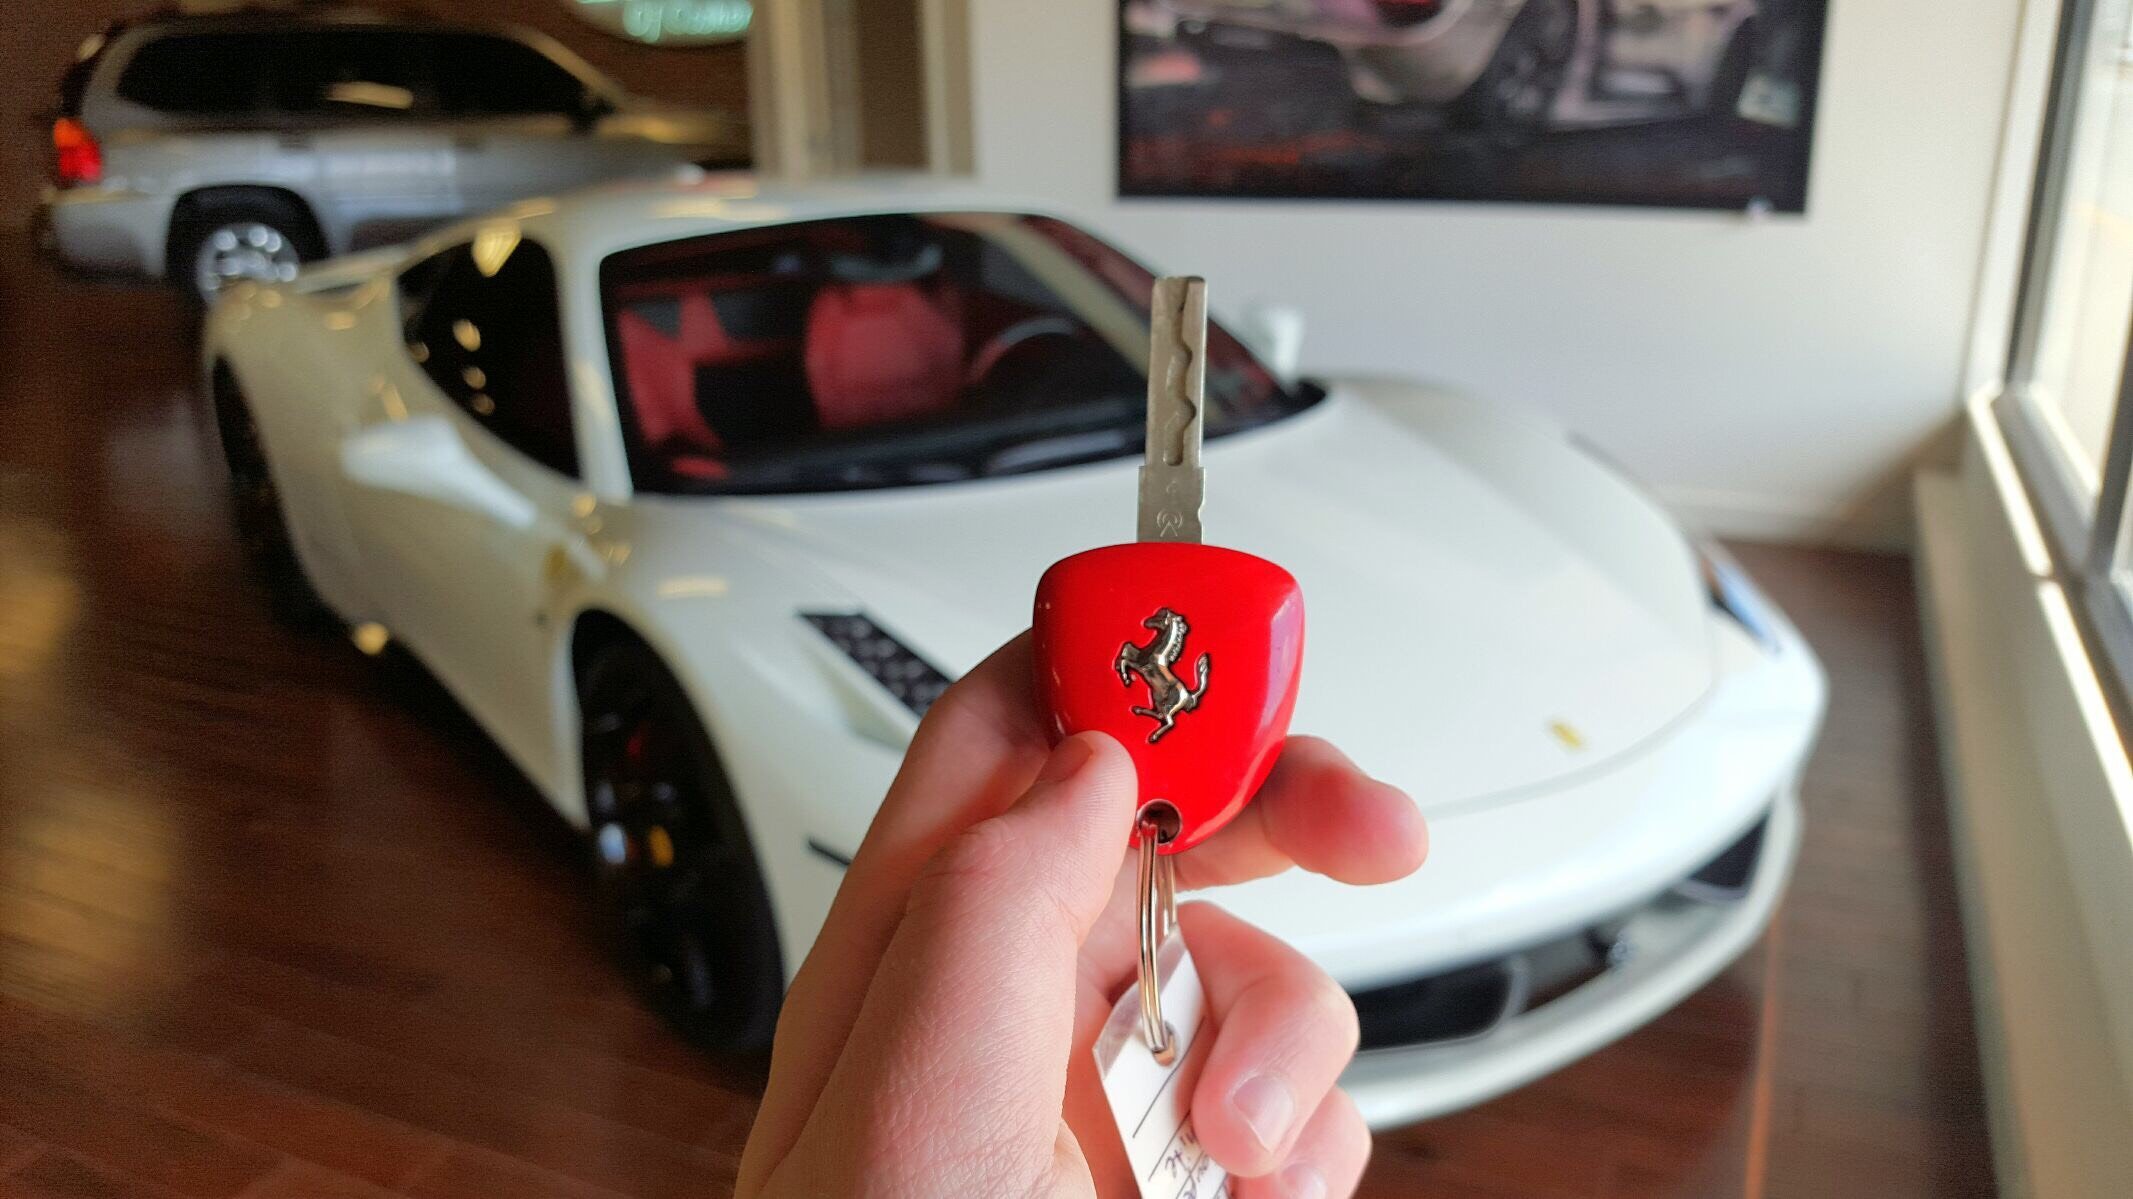 Ключ Ferrari sf90. Ключи от машины. Ключ от дорогой машины. Ключи от машины Ferrari. Keyed my car